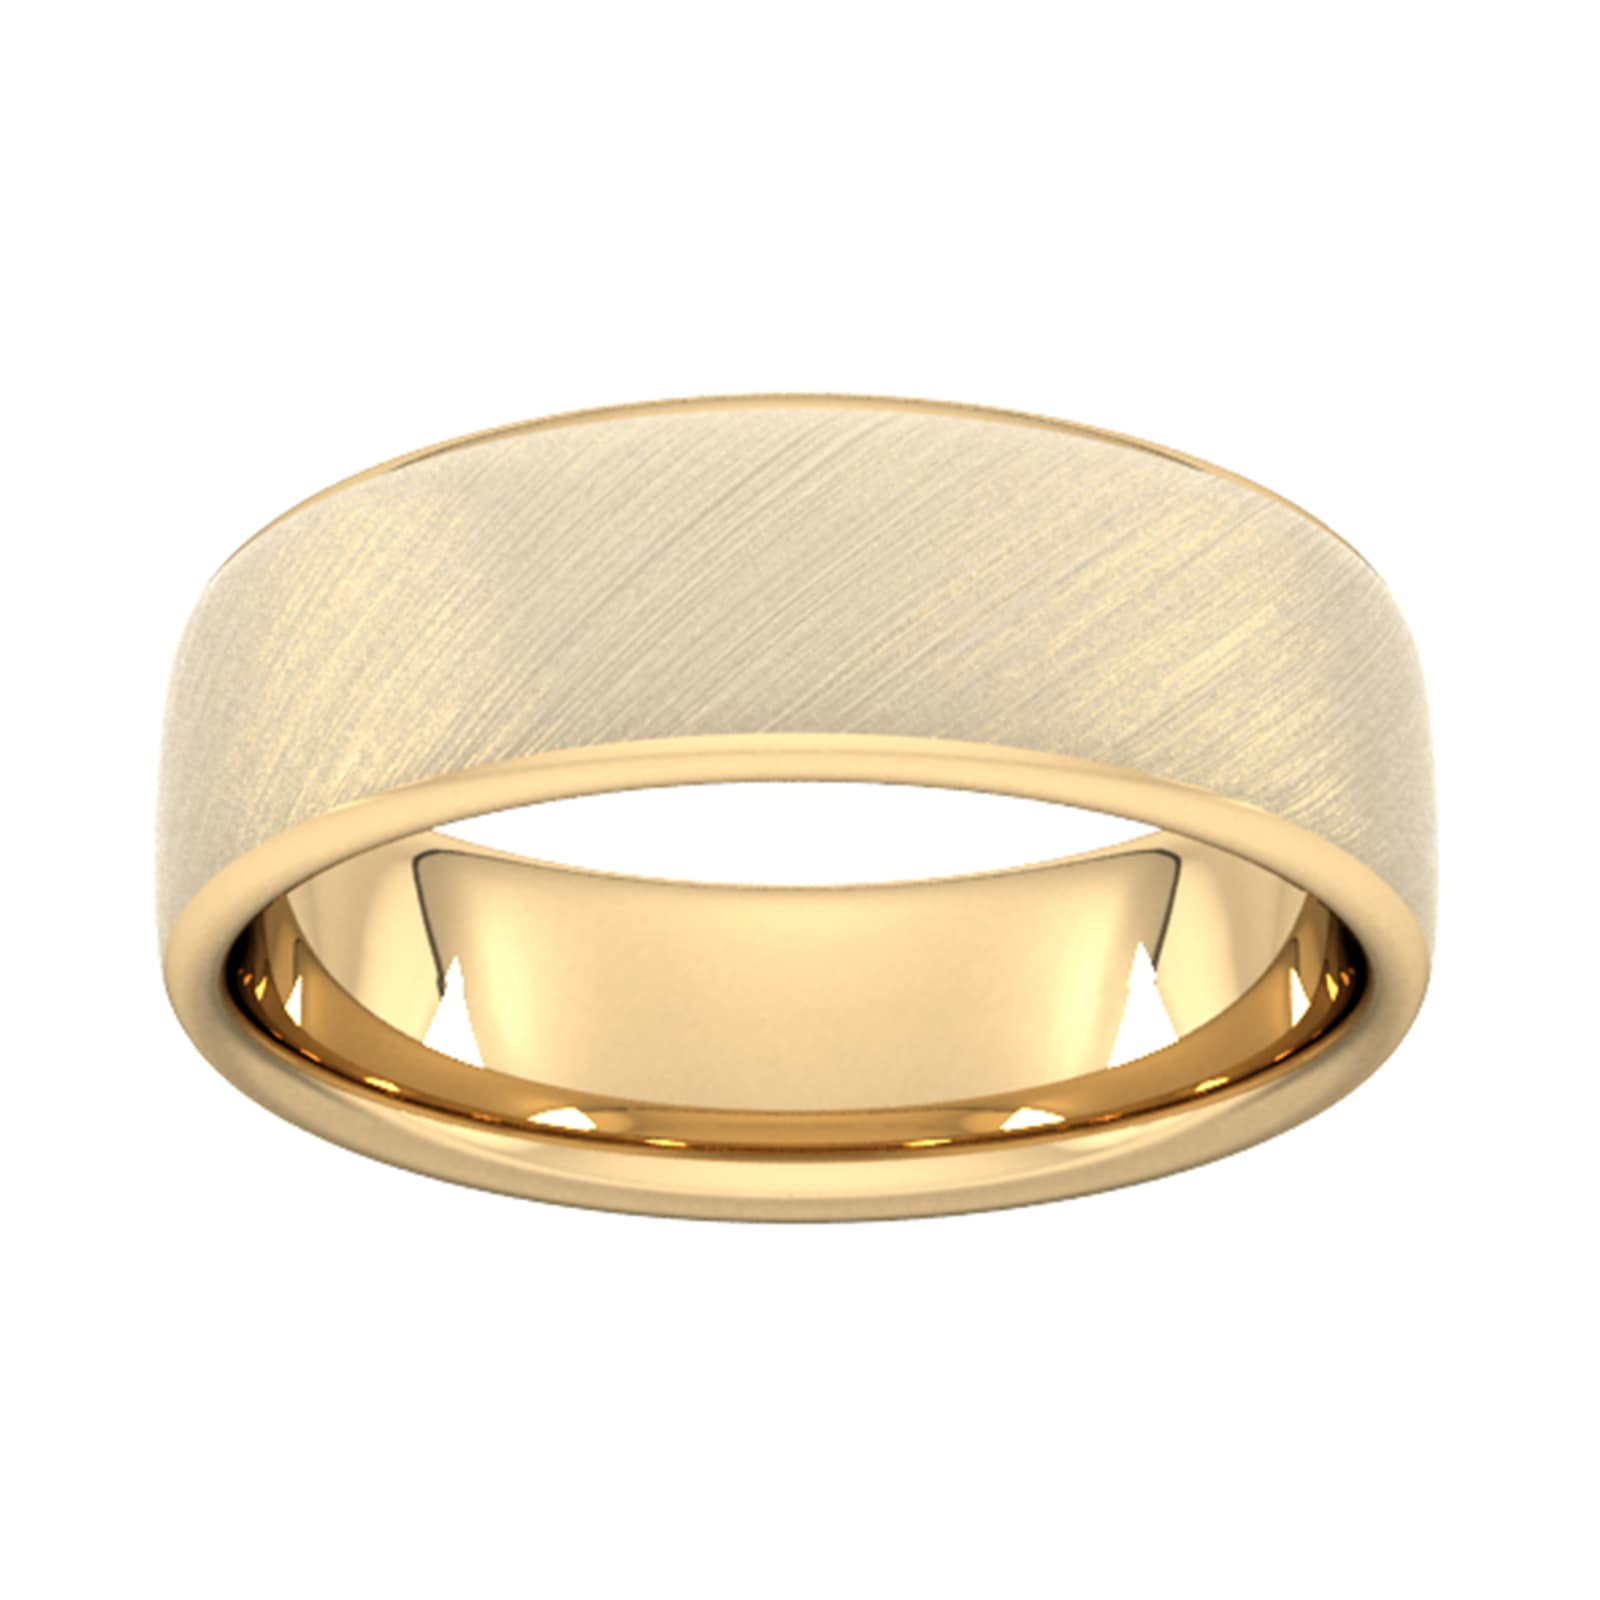 7mm Slight Court Heavy Diagonal Matt Finish Wedding Ring In 18 Carat Yellow Gold - Ring Size Y